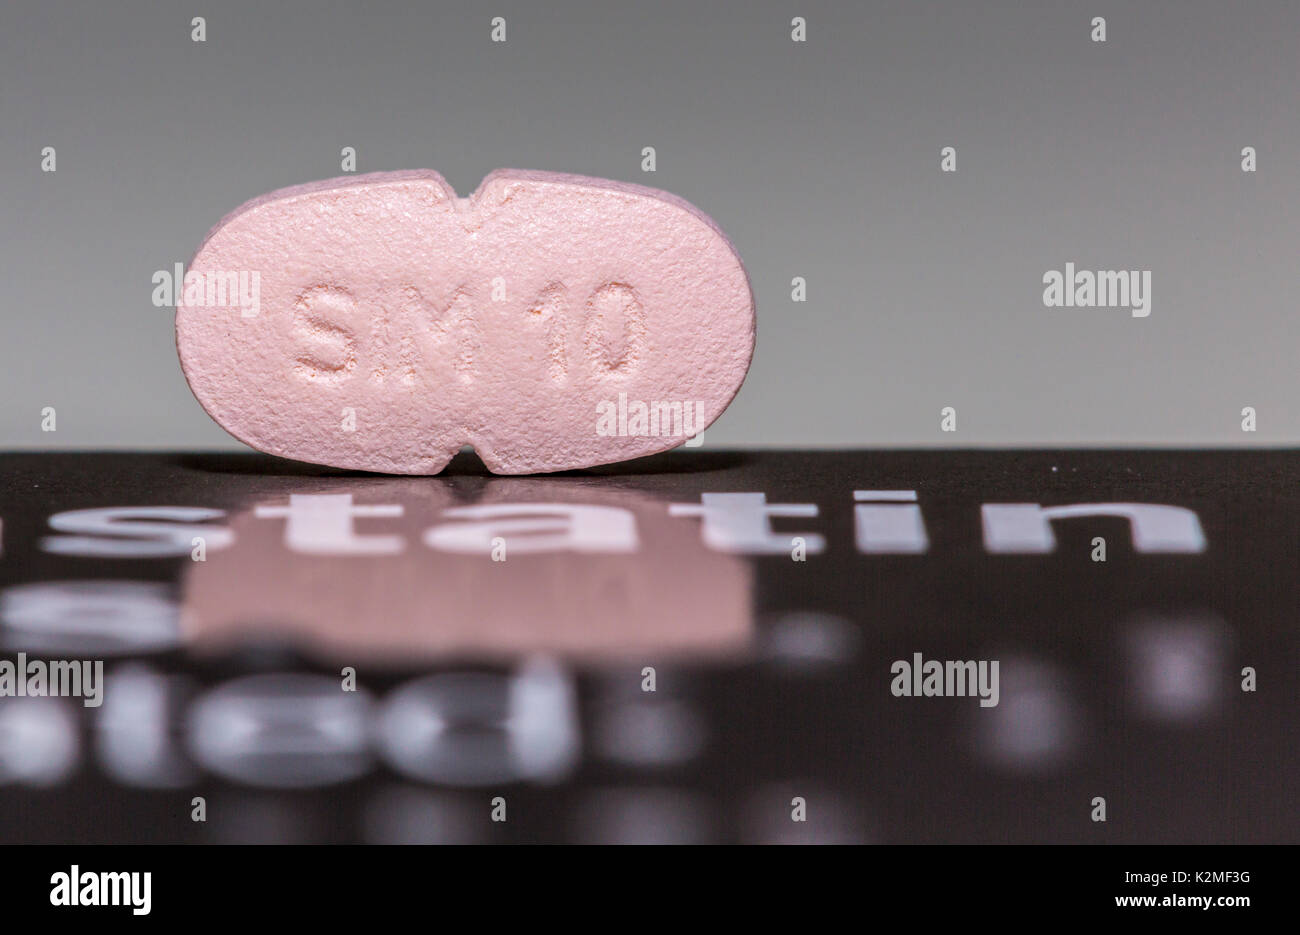 La simvastatina, statina, tablet, pillola, farmaco per abbassare il colesterolo cattivo. Foto Stock